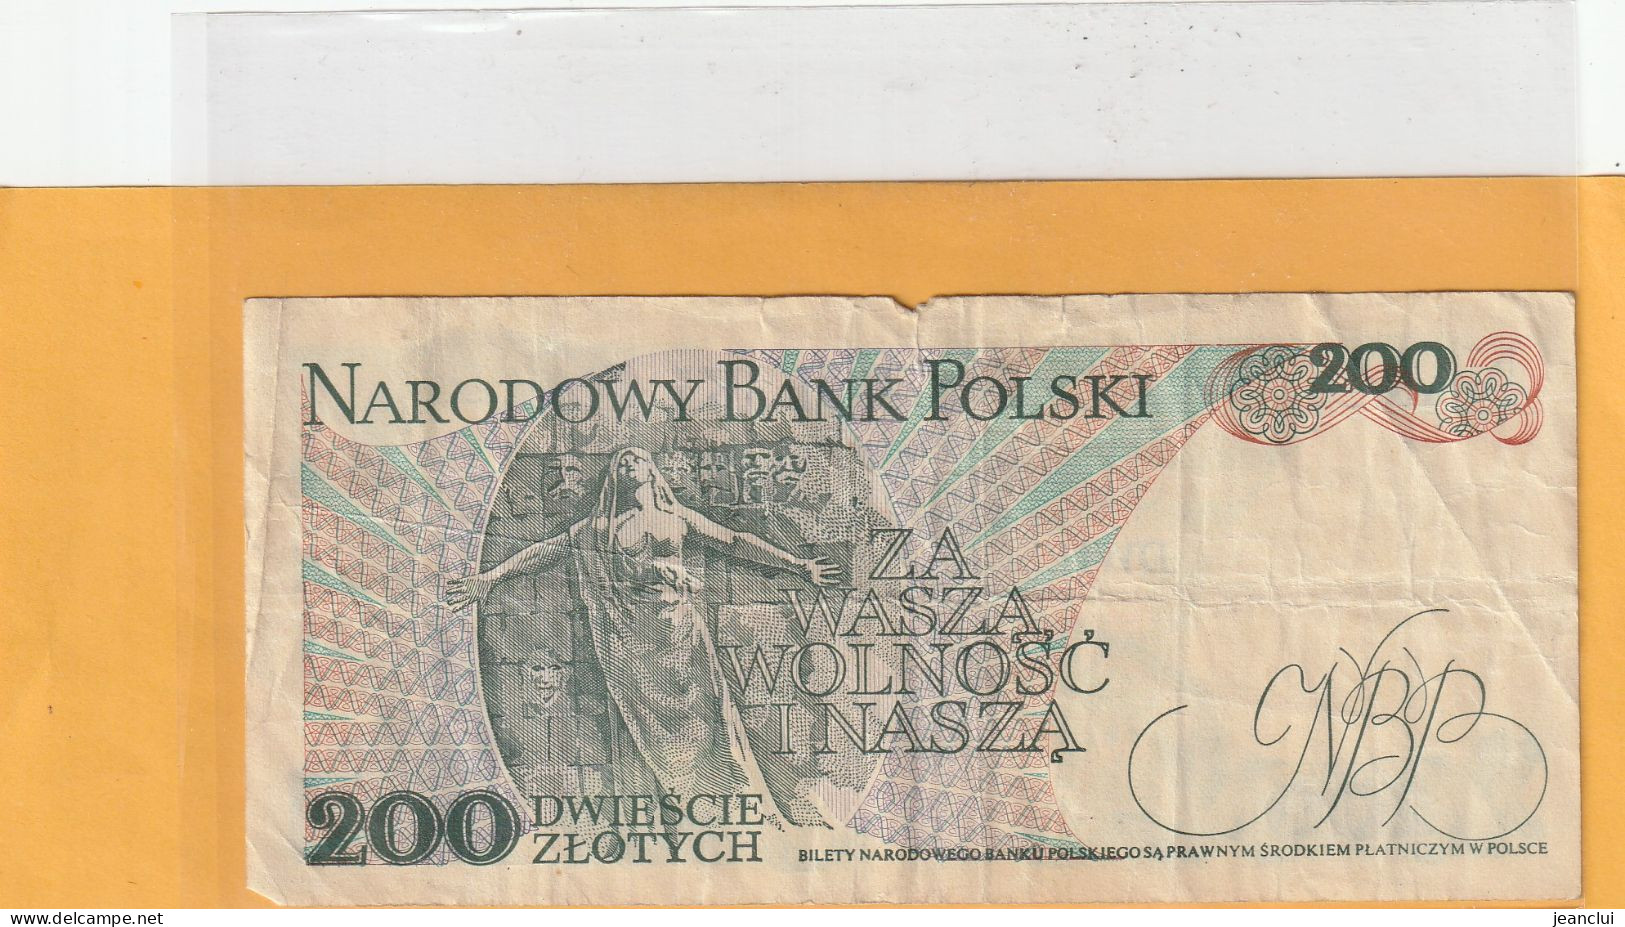 NARODOWY BANK POLSKI . 200 ZLOTYCH .  J. DABROWSKI  . 1-12-1988 .  N° EE 5758859 . 2 SCANNES  .  BILLET USITE - Polen